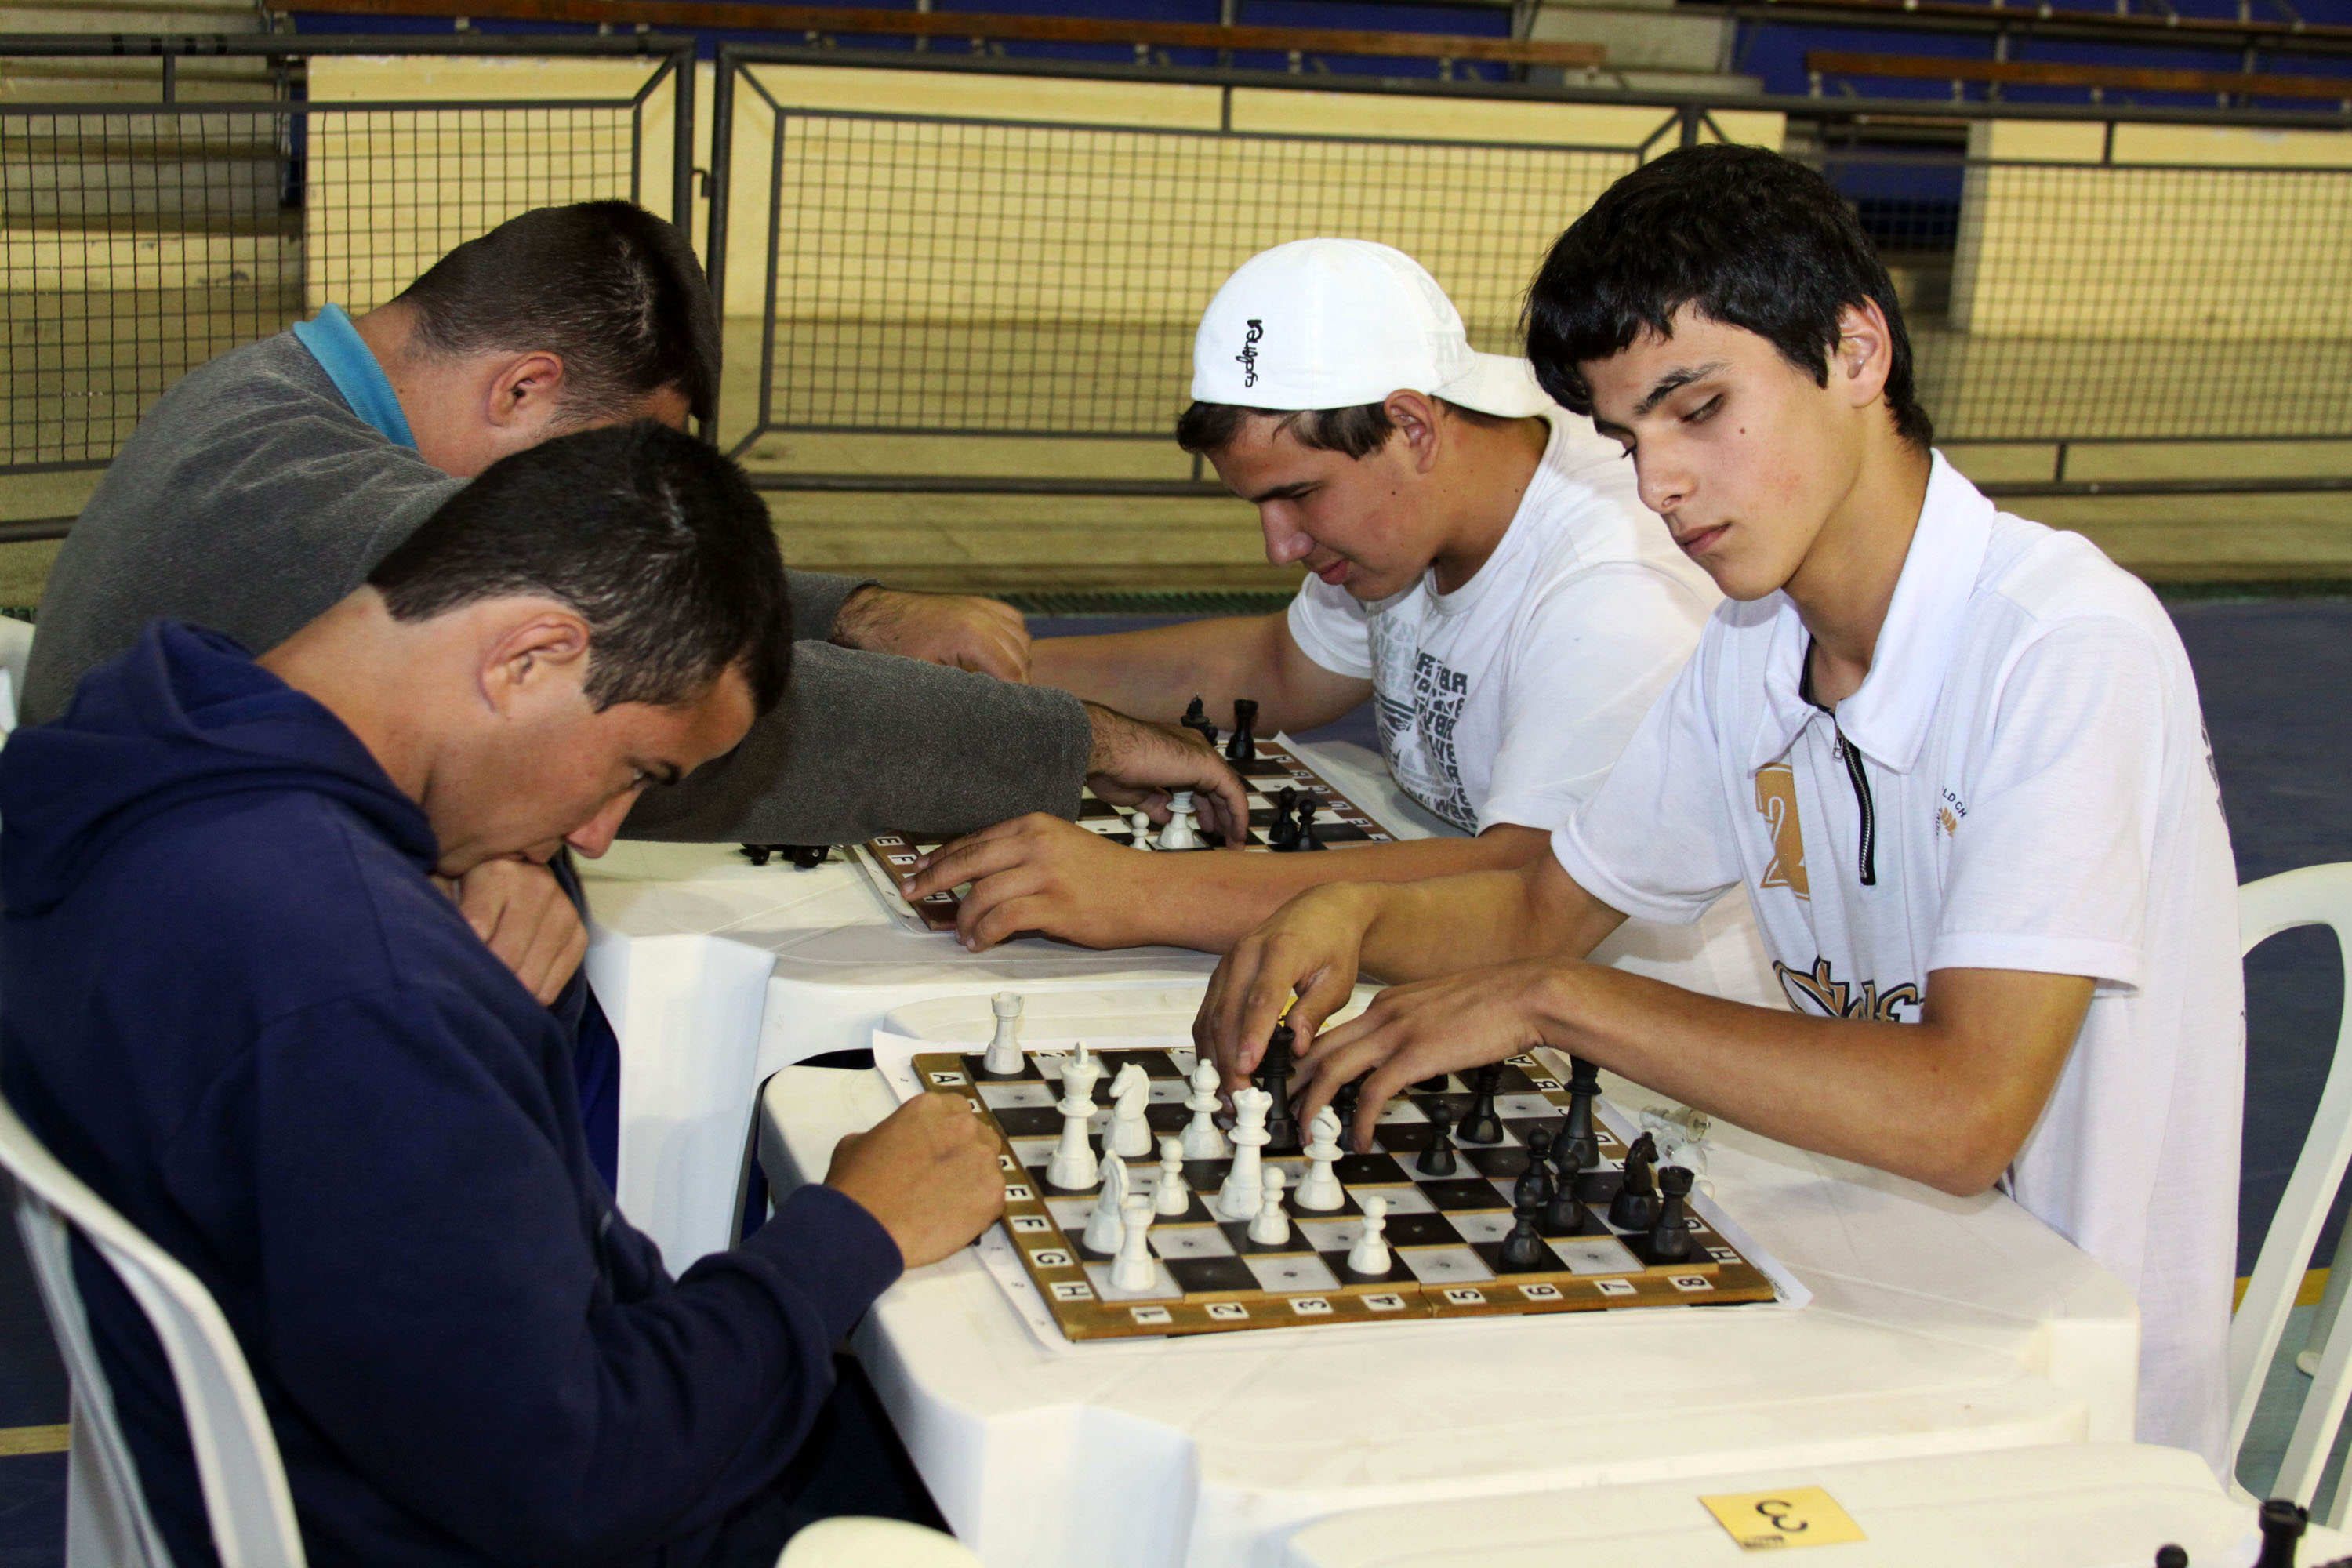 Circuito Xeque-Mate de Xadrez já reuniu cerca de 2.500 estudantes-atletas  nas competições - FEXPAR - Federação de Xadrez do Paraná